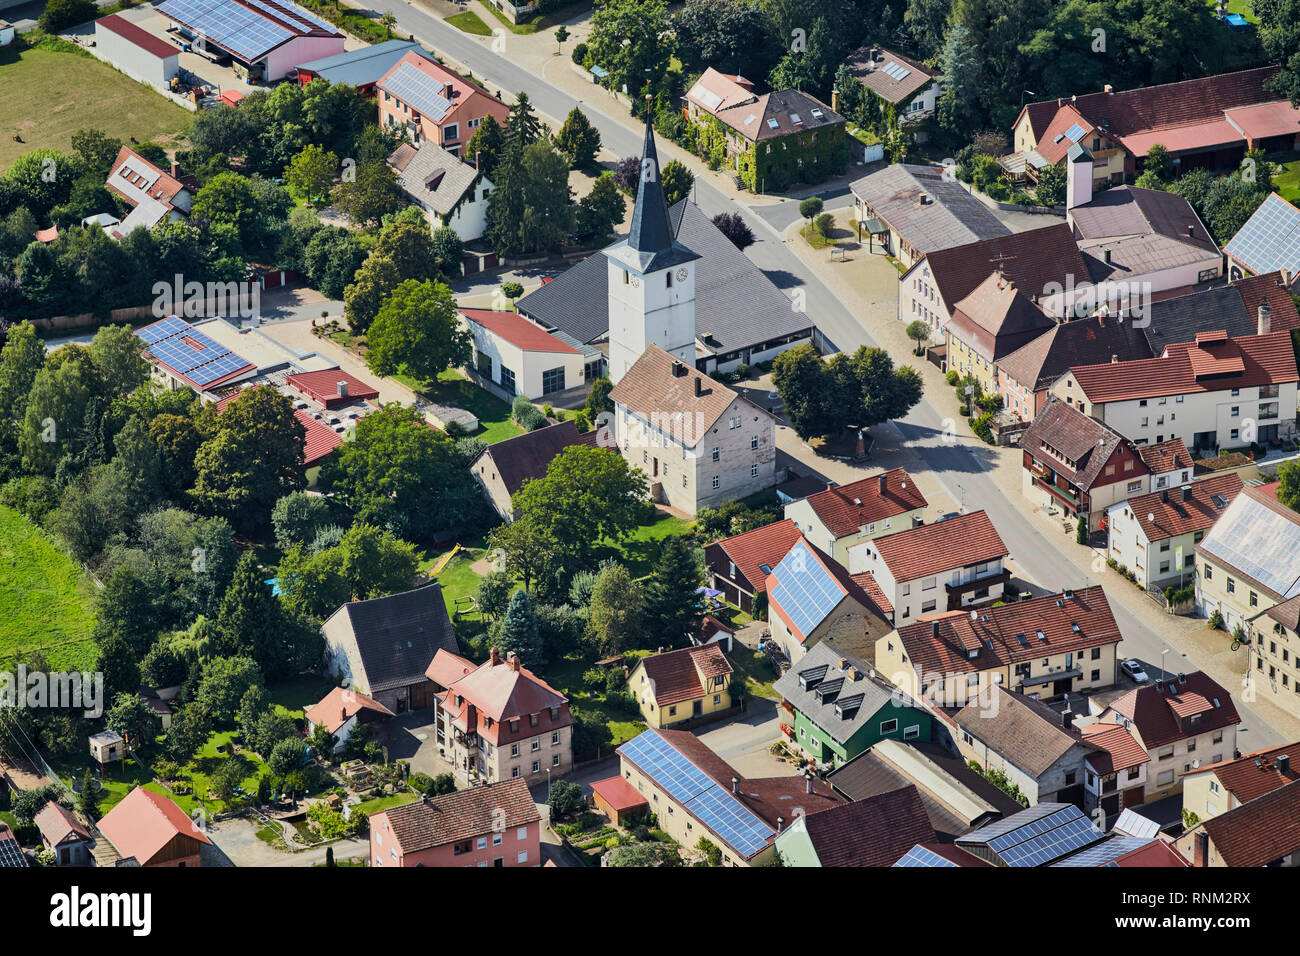 Die Stadt Untersteinbach aus der Luft gesehen. Gemeinde Rauhenebrach - Landkreis Hassberg, Bayern, Deutschland Stockfoto